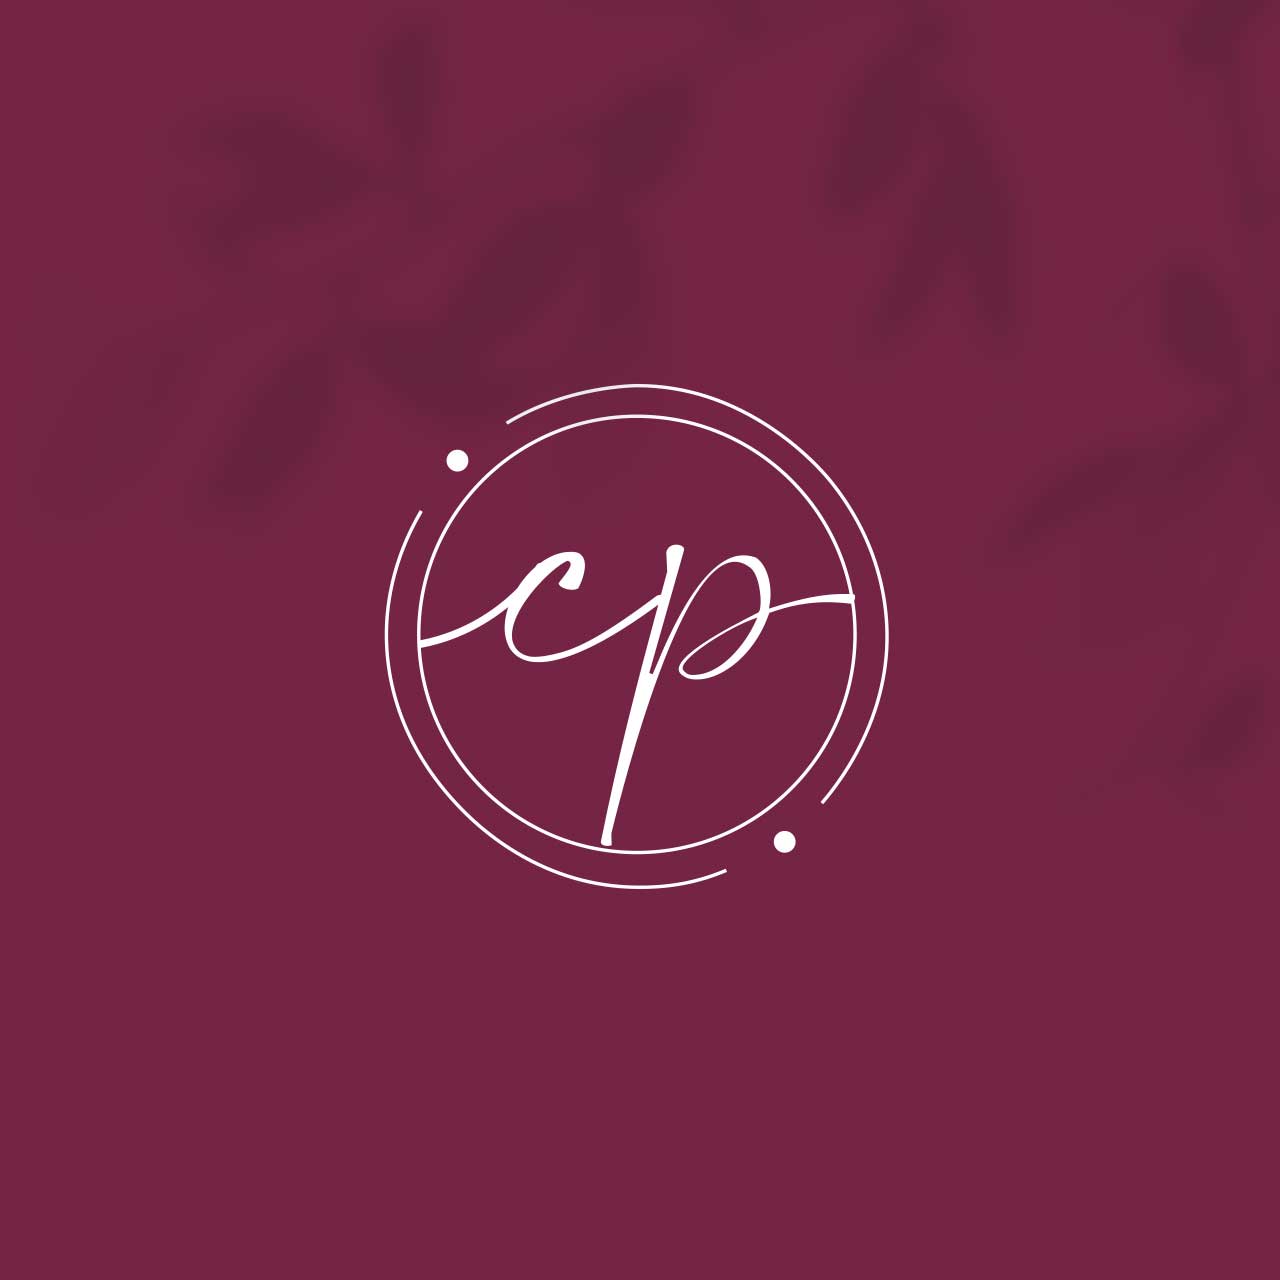 Creazione logo e sito Cristina Pedretti 2